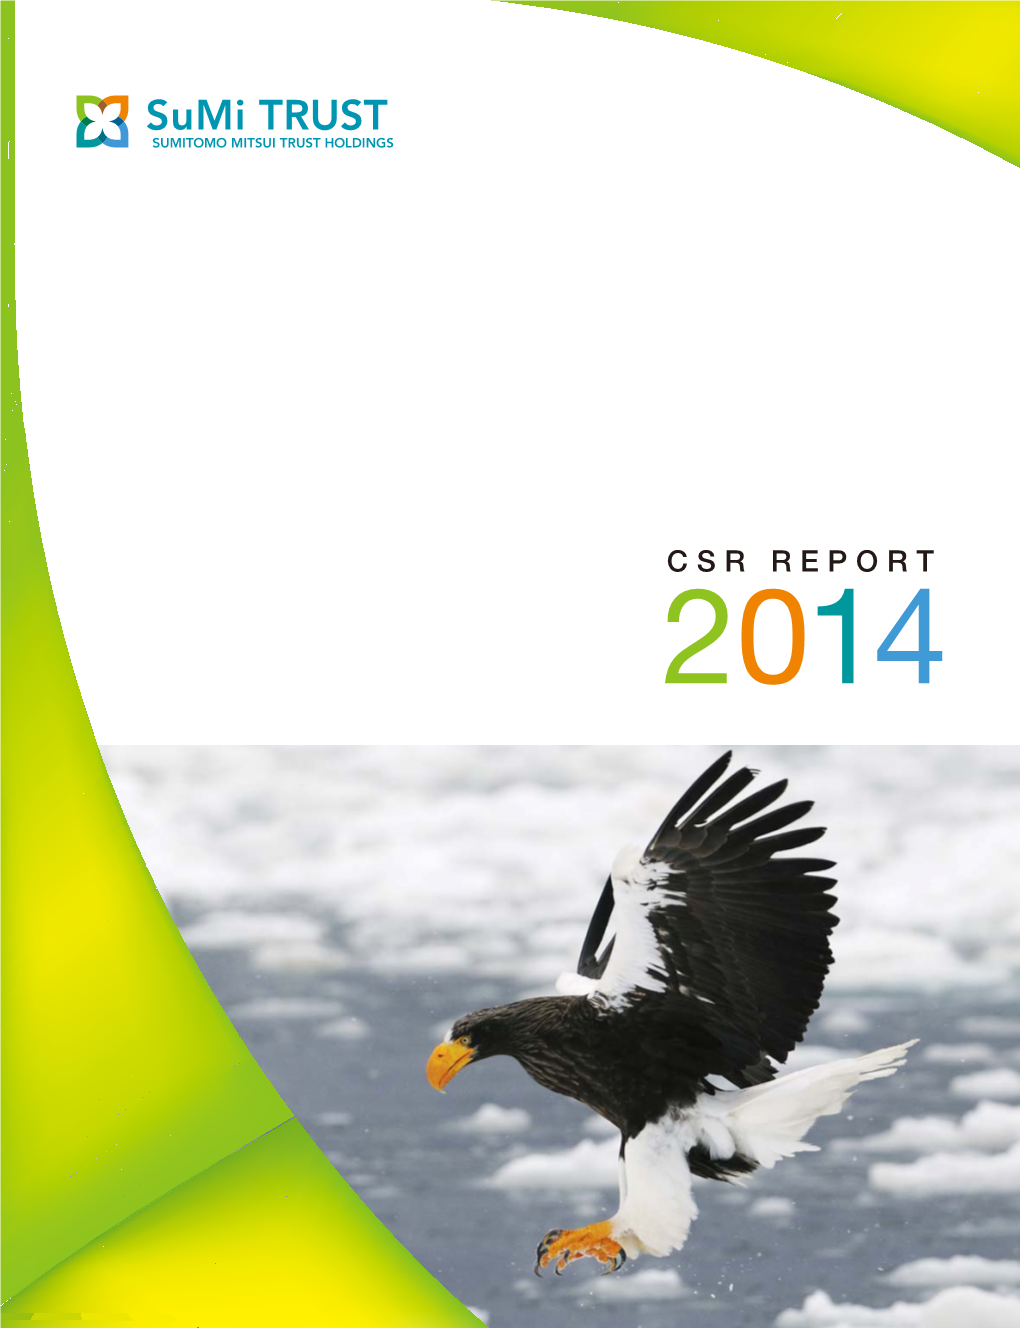 CSR REPORT 2014 Management Principles (“Mission”)